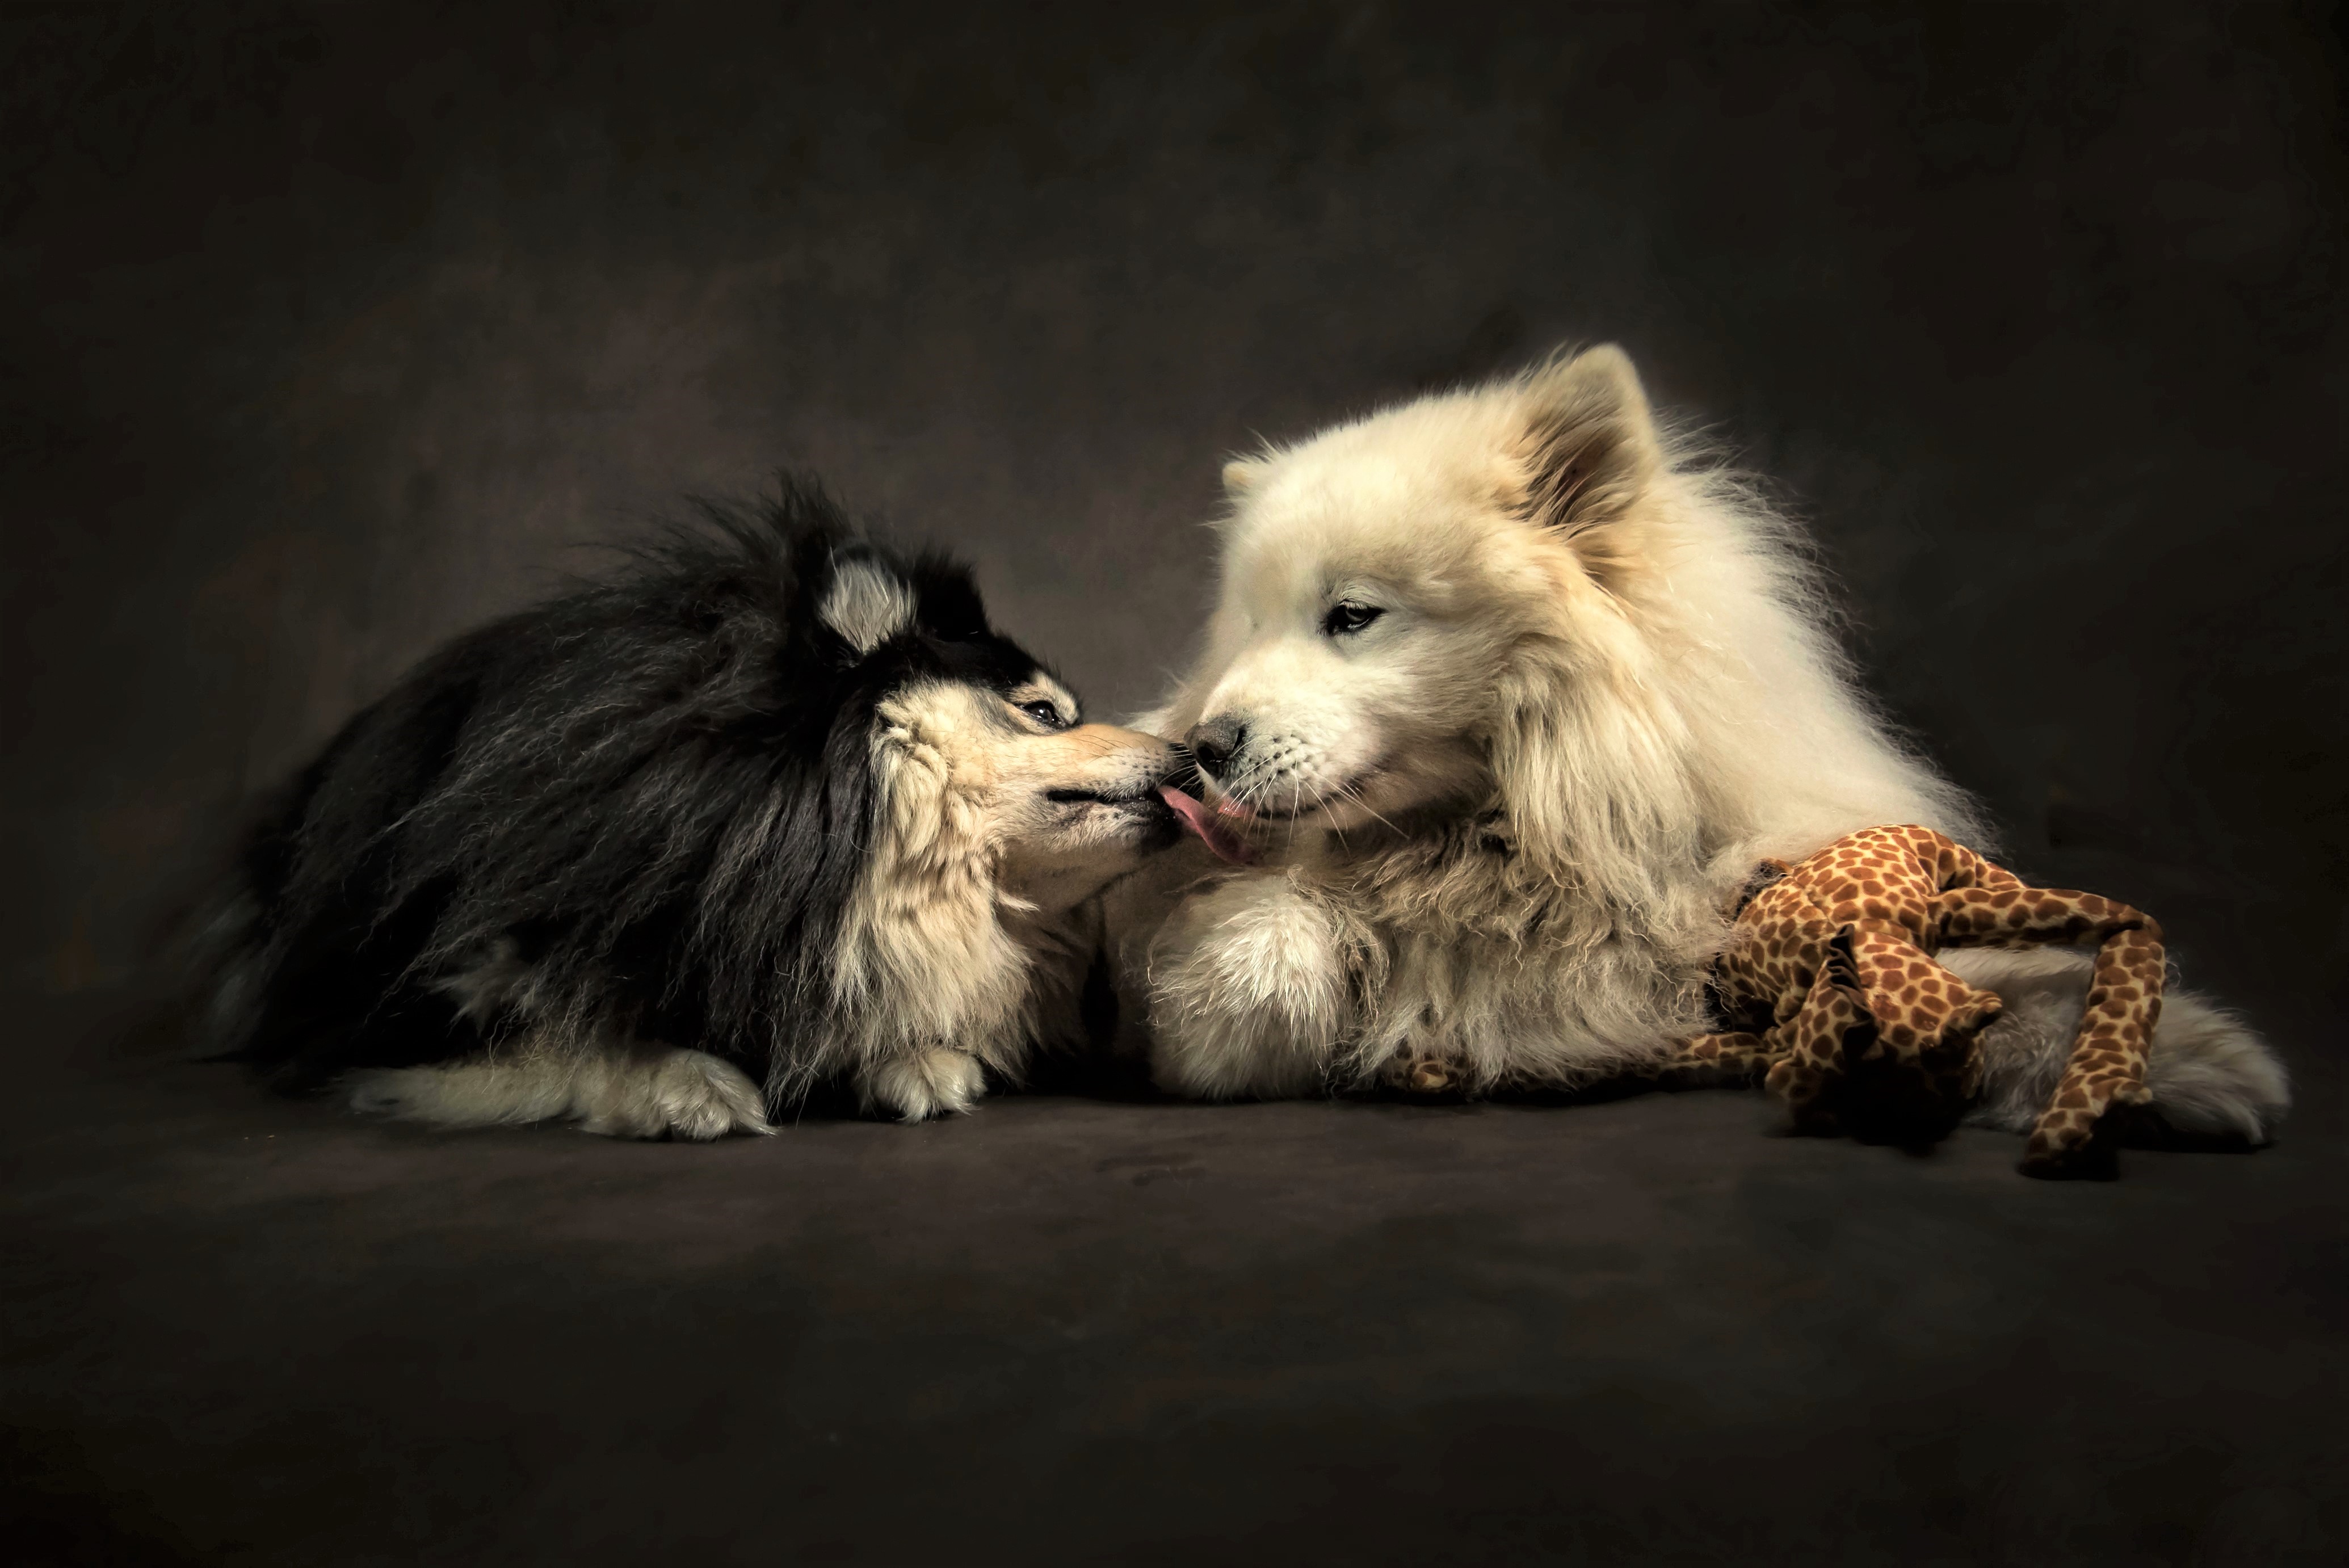 Cute Dog Friend Kiss Love 4139x2763